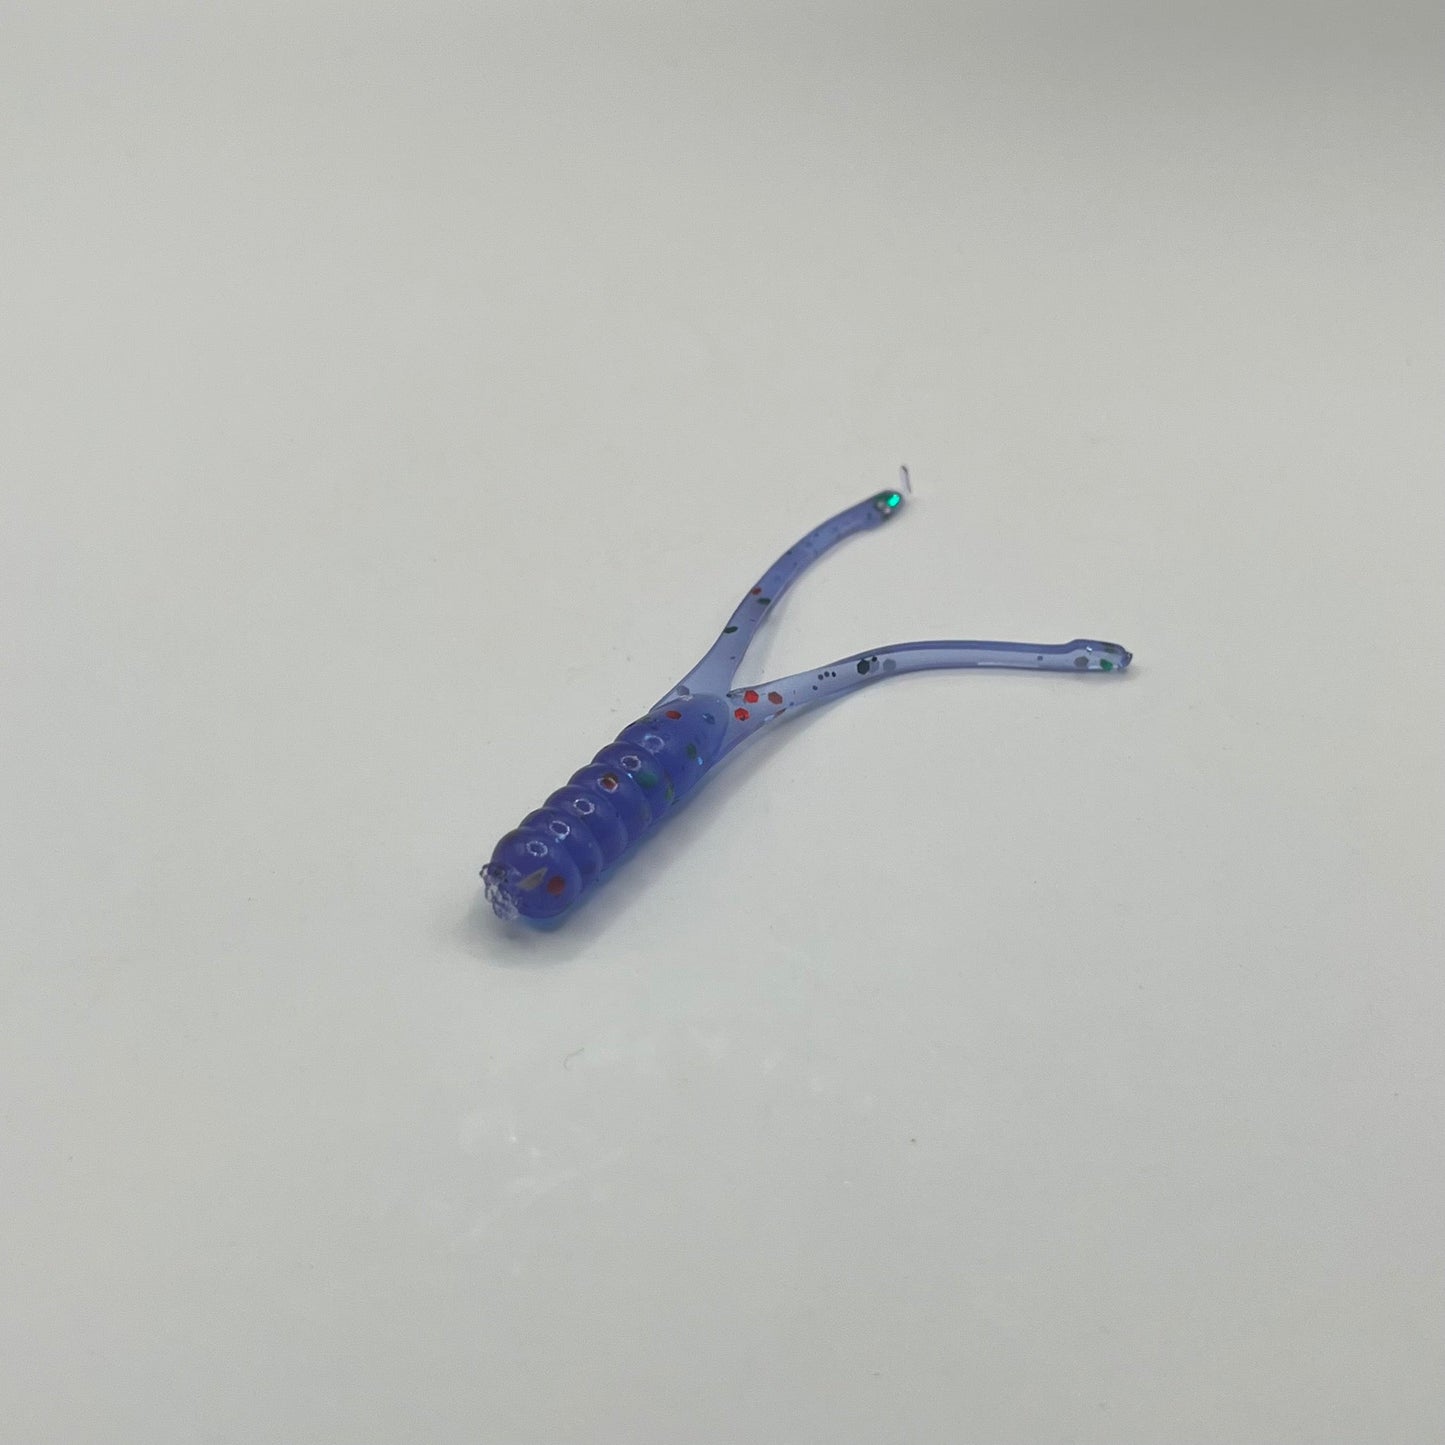 Purple Crappie Beetle Bug 2.25" - Premium Soft Plastic Lure from JAC’D Bait Co - Shop now!